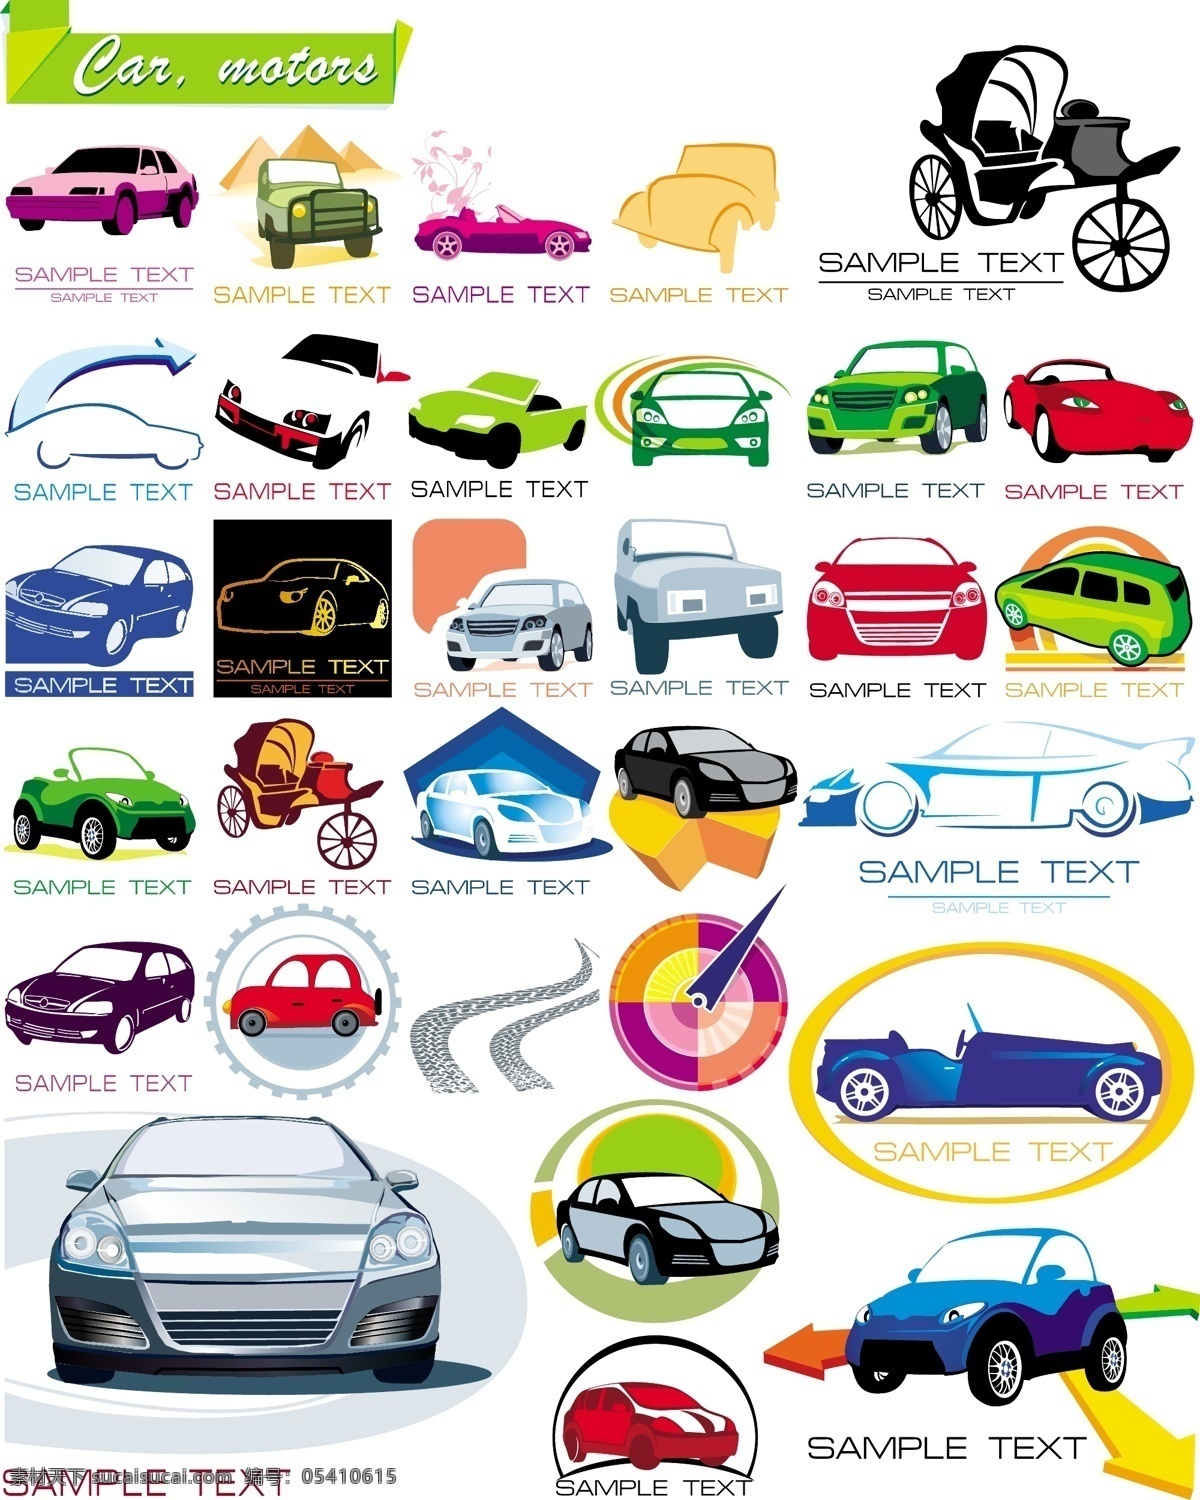 一些 关于 汽车 图形 图标 矢量 logo模板 道路 箭头 交通 轿车 模板 矢量素材 仪表 敞篷车 黄包车 矢量图 现代科技